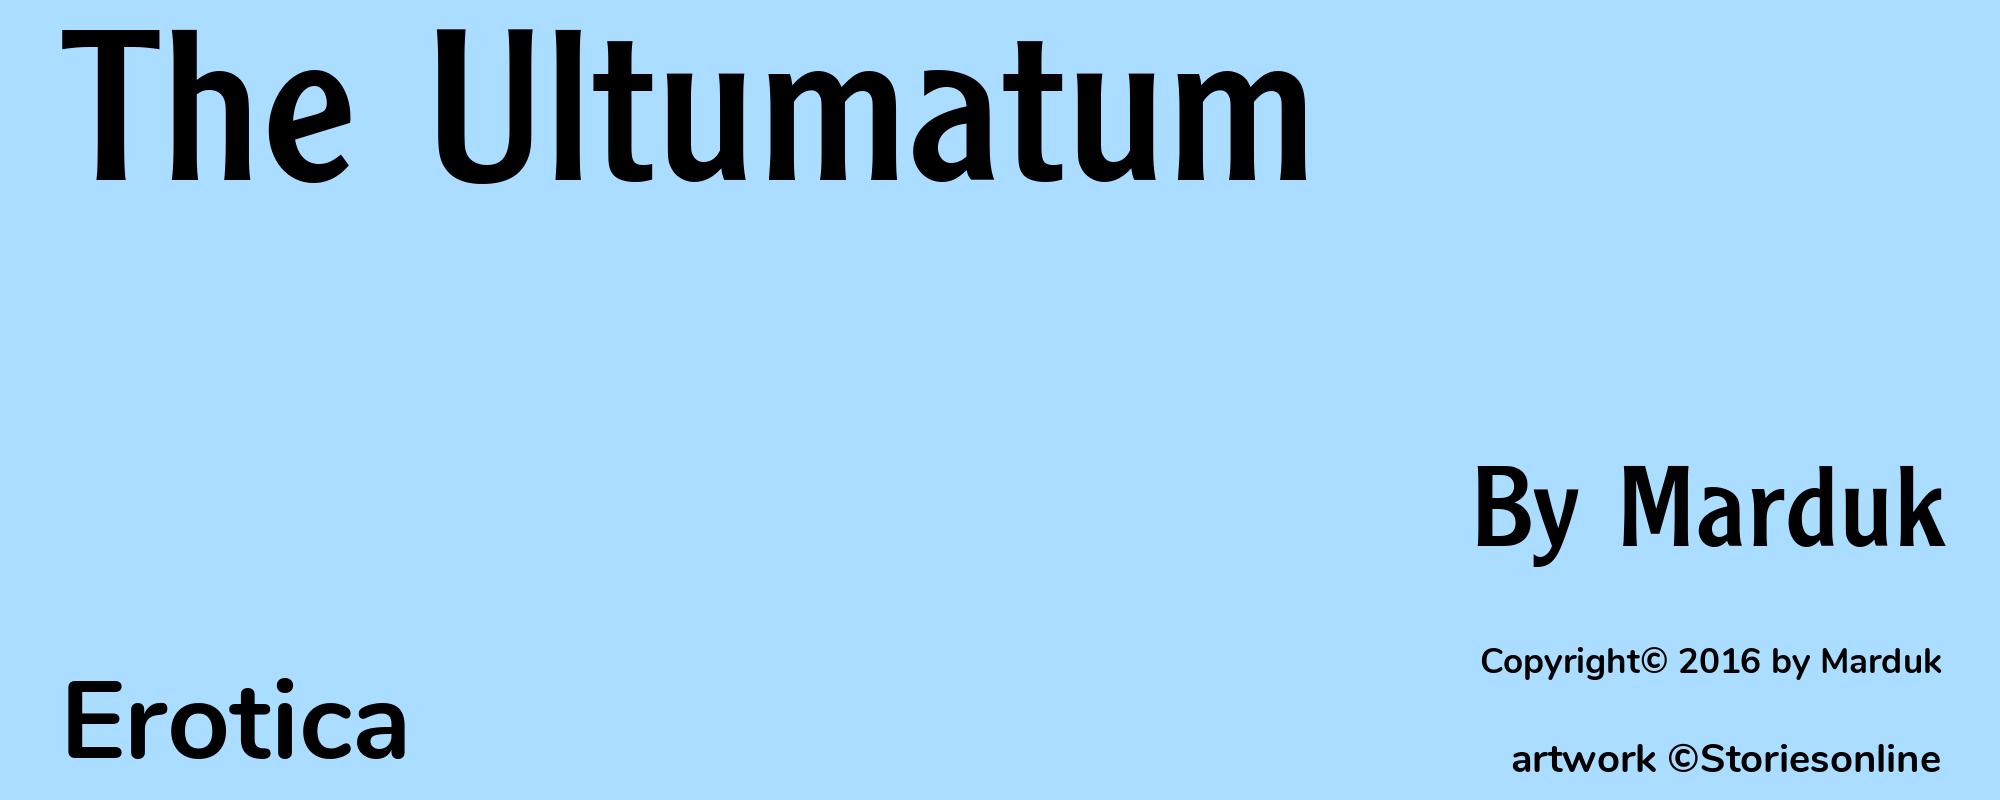 The Ultumatum - Cover